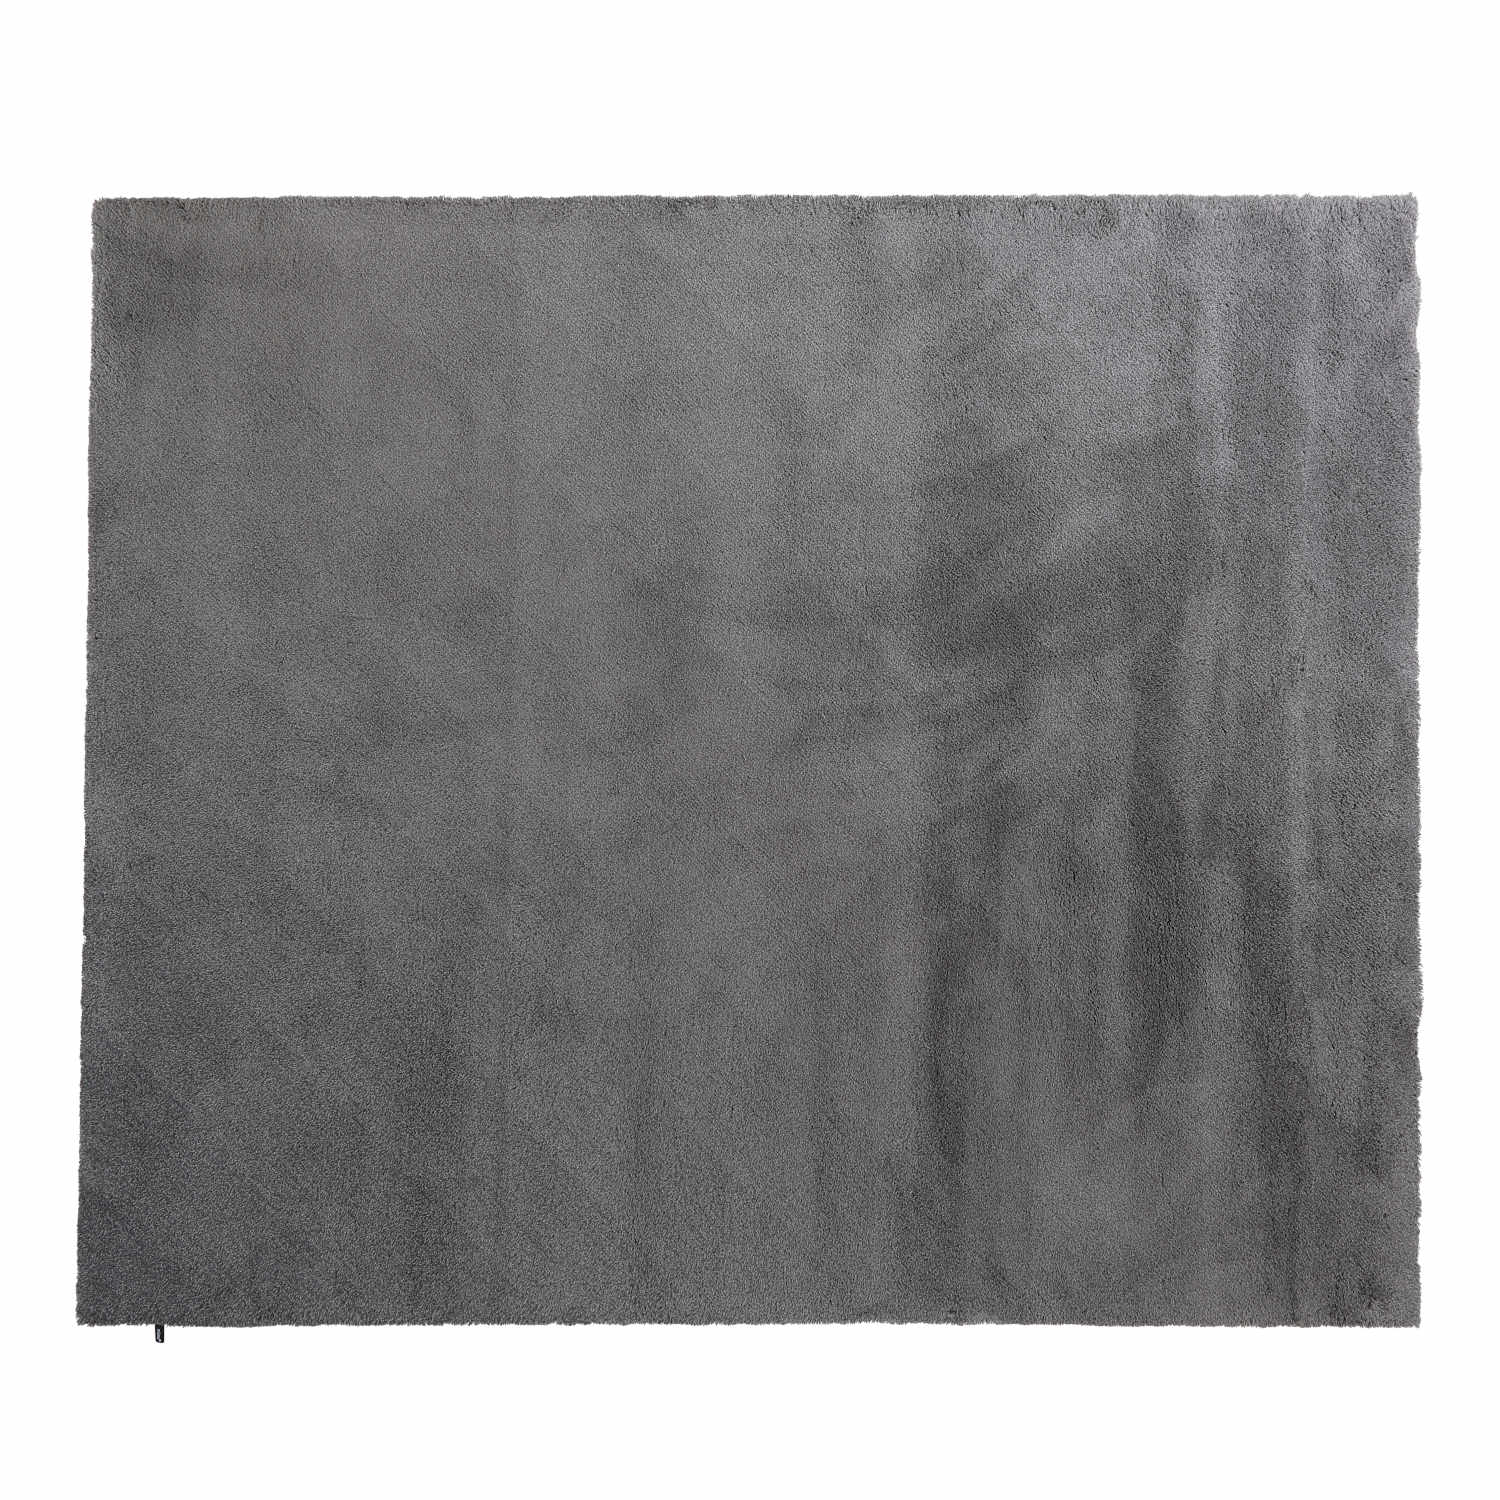 Coality Teppich, Grösse 300 x 400 cm, Farbe storm